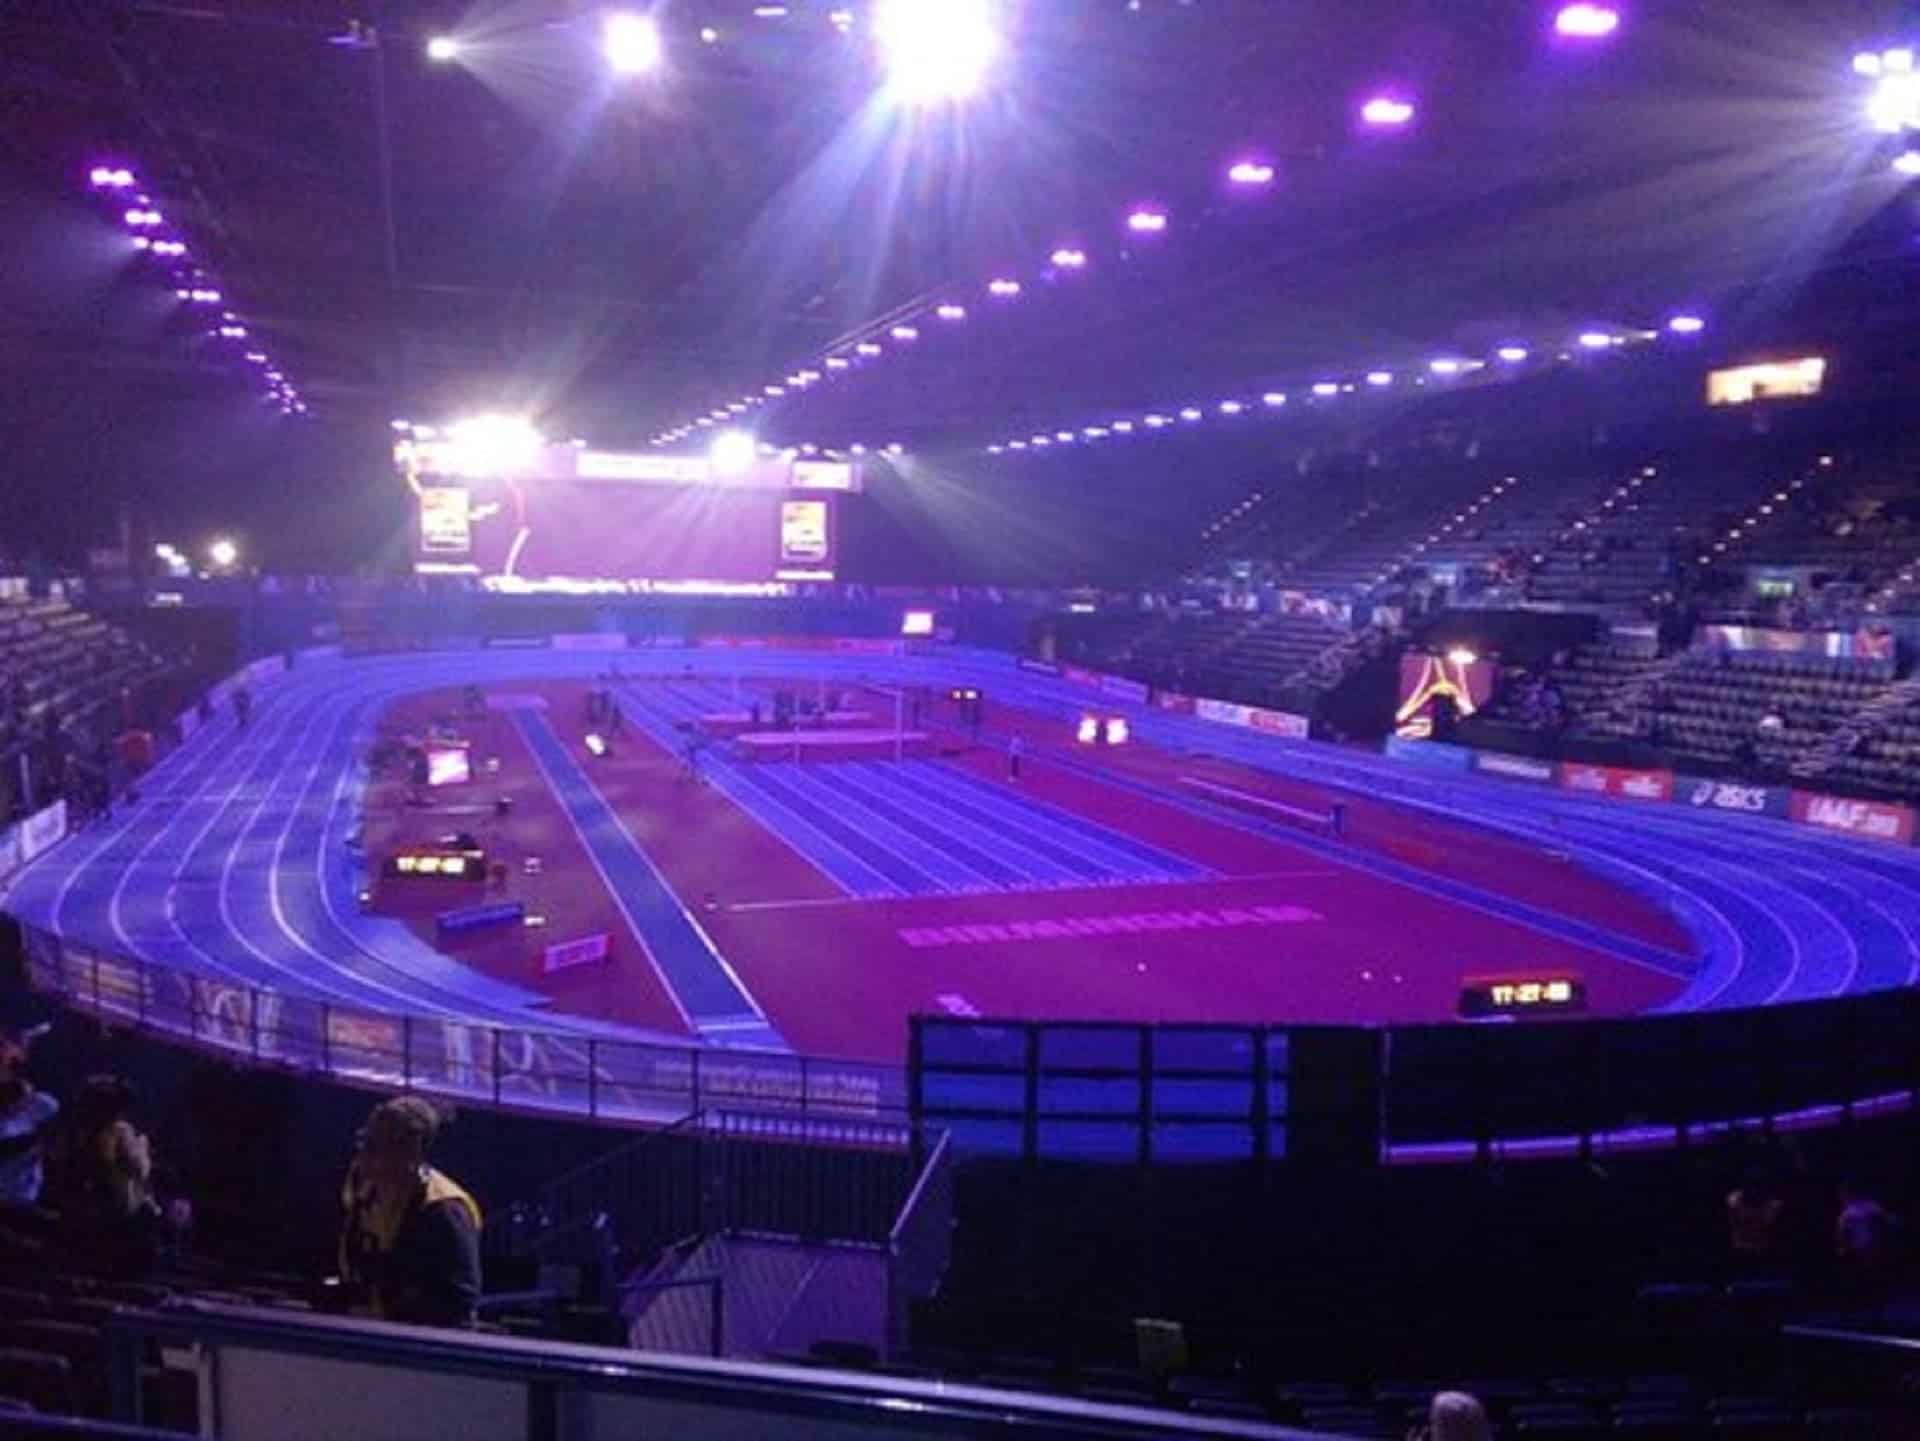 Arena Birmingham in UK